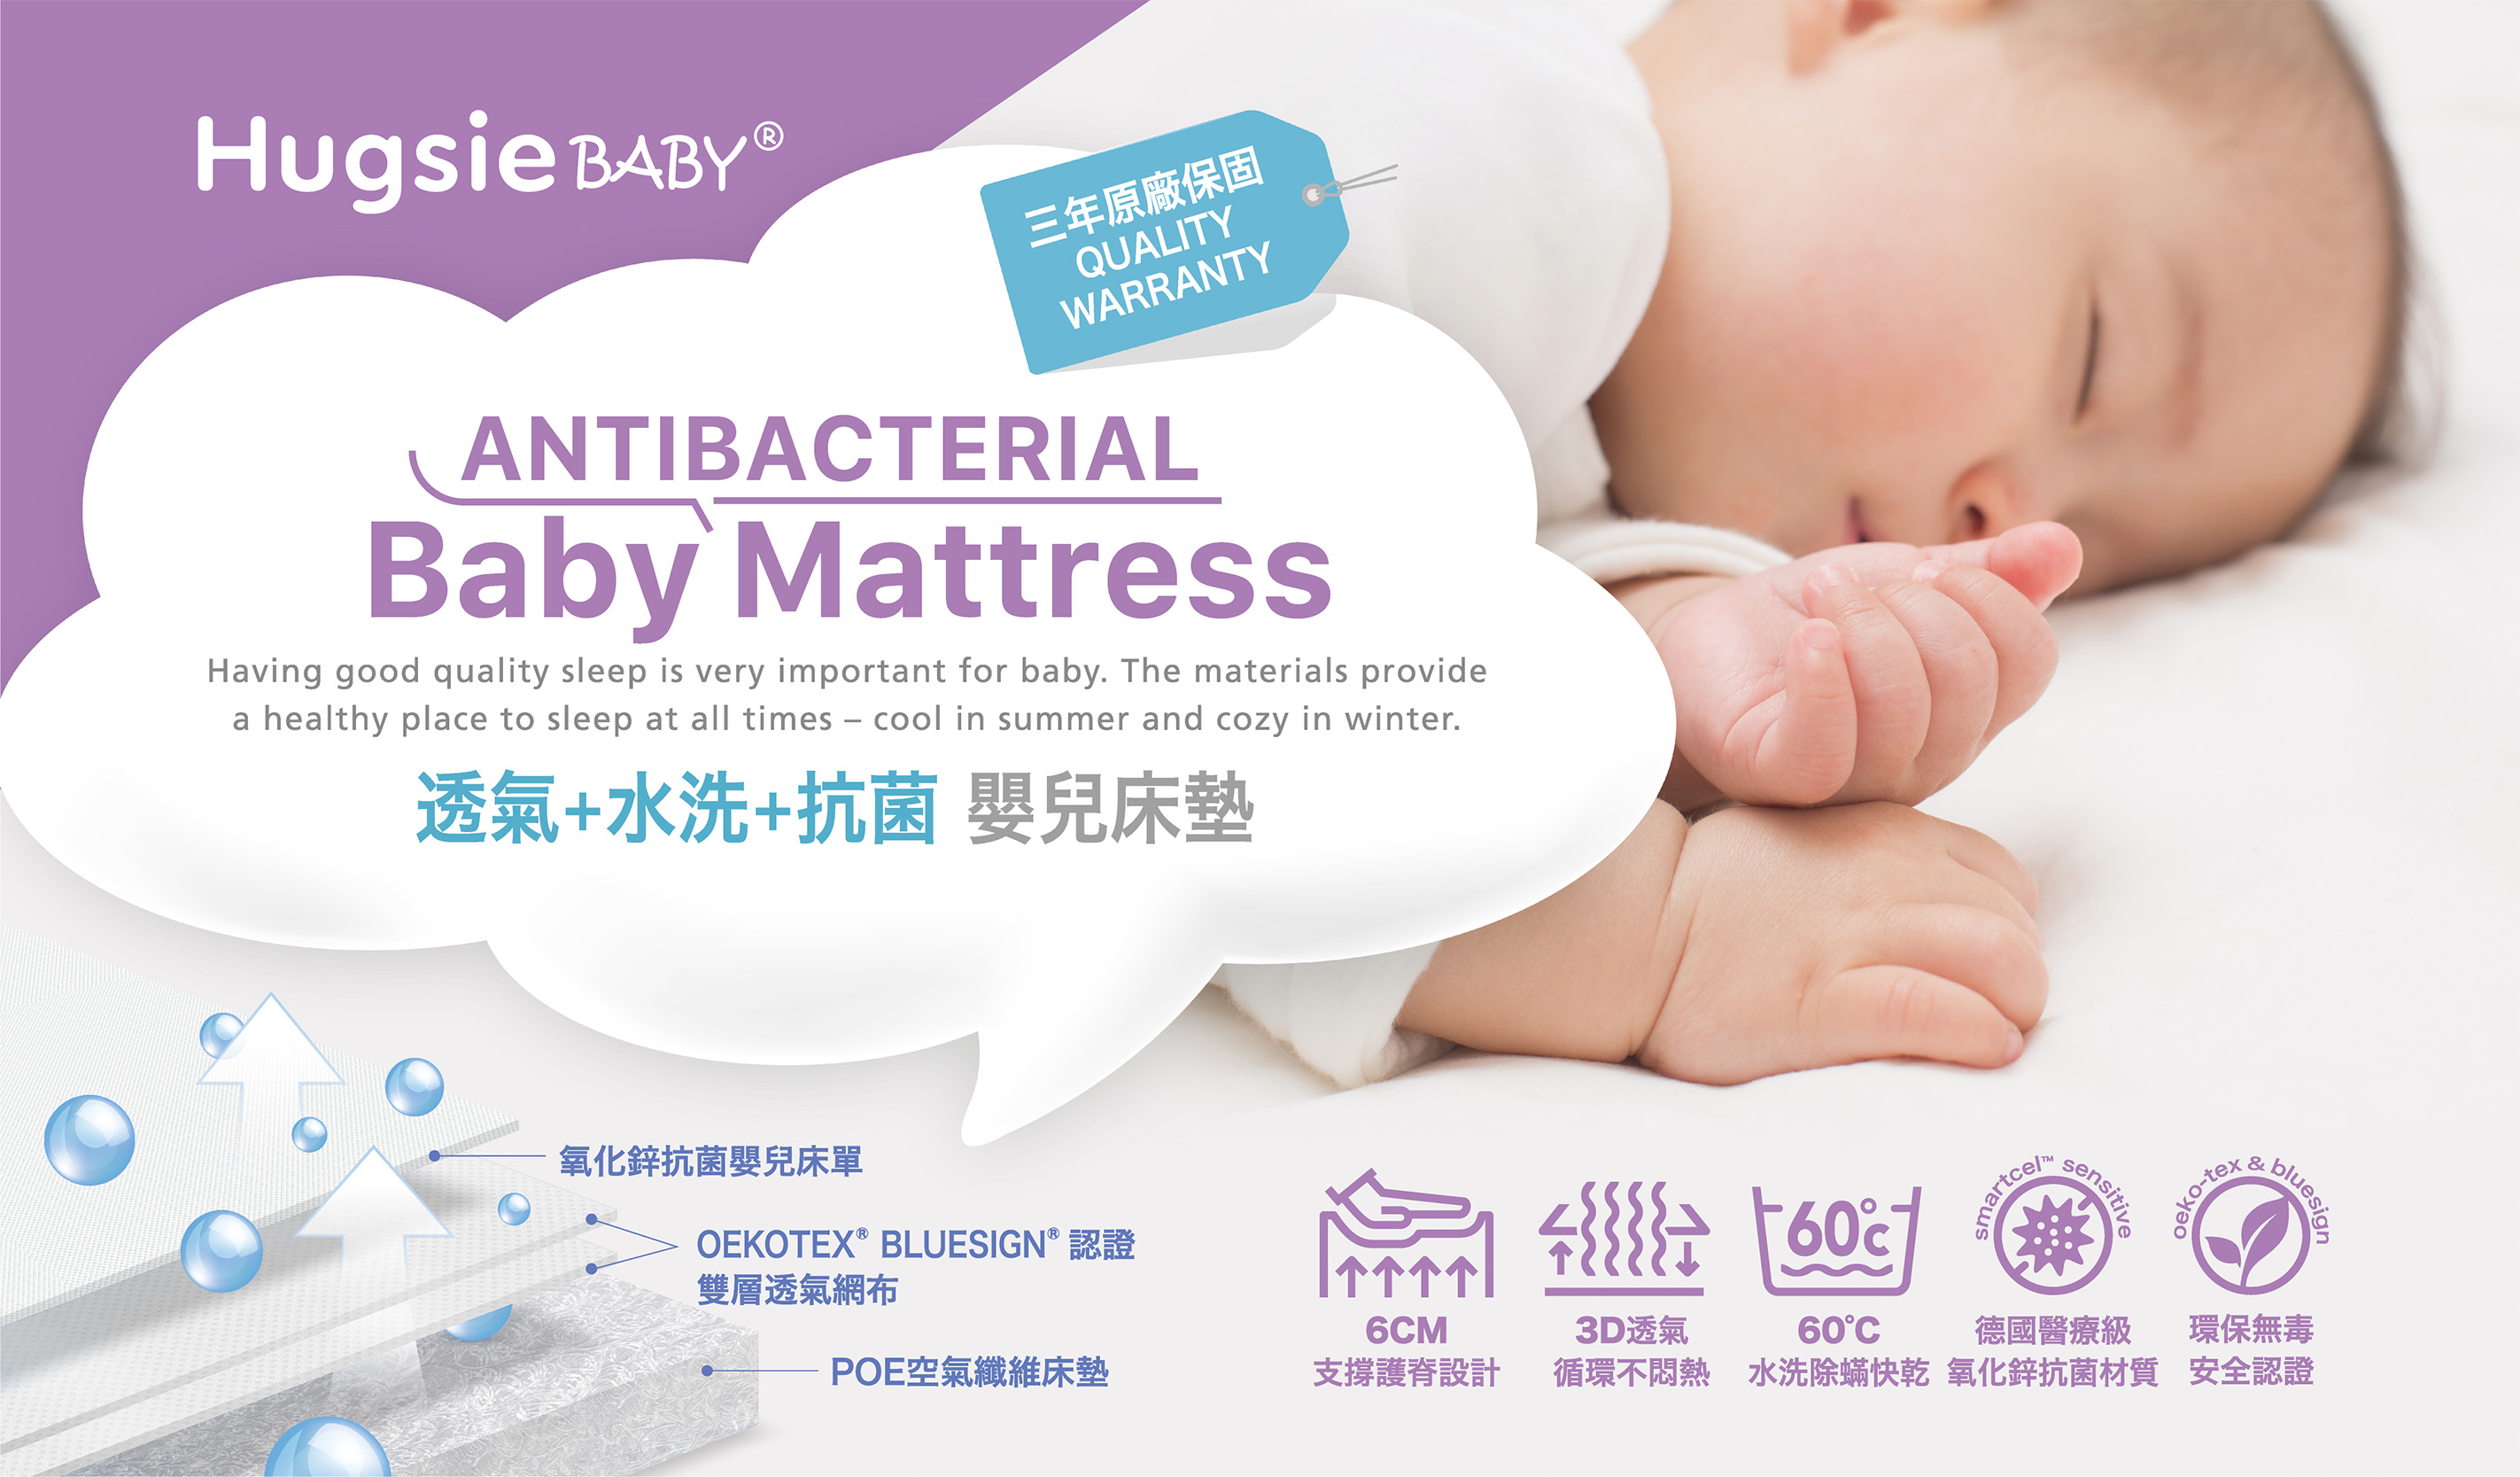 52,華宸國際,Hugsie Baby,嬰兒床墊 包裝卡設計